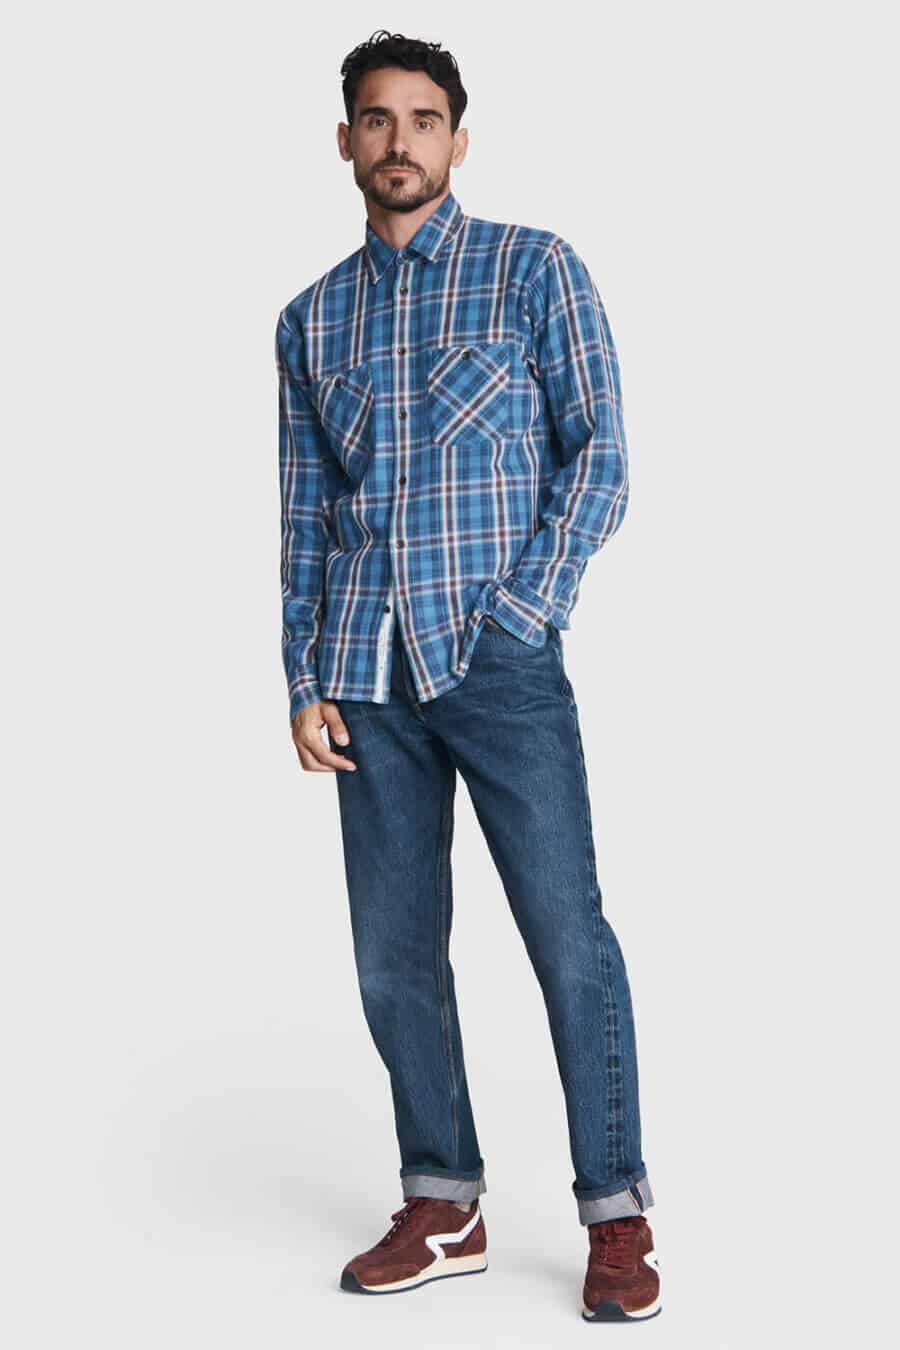 Men's tonal blue flannel shirt outfit